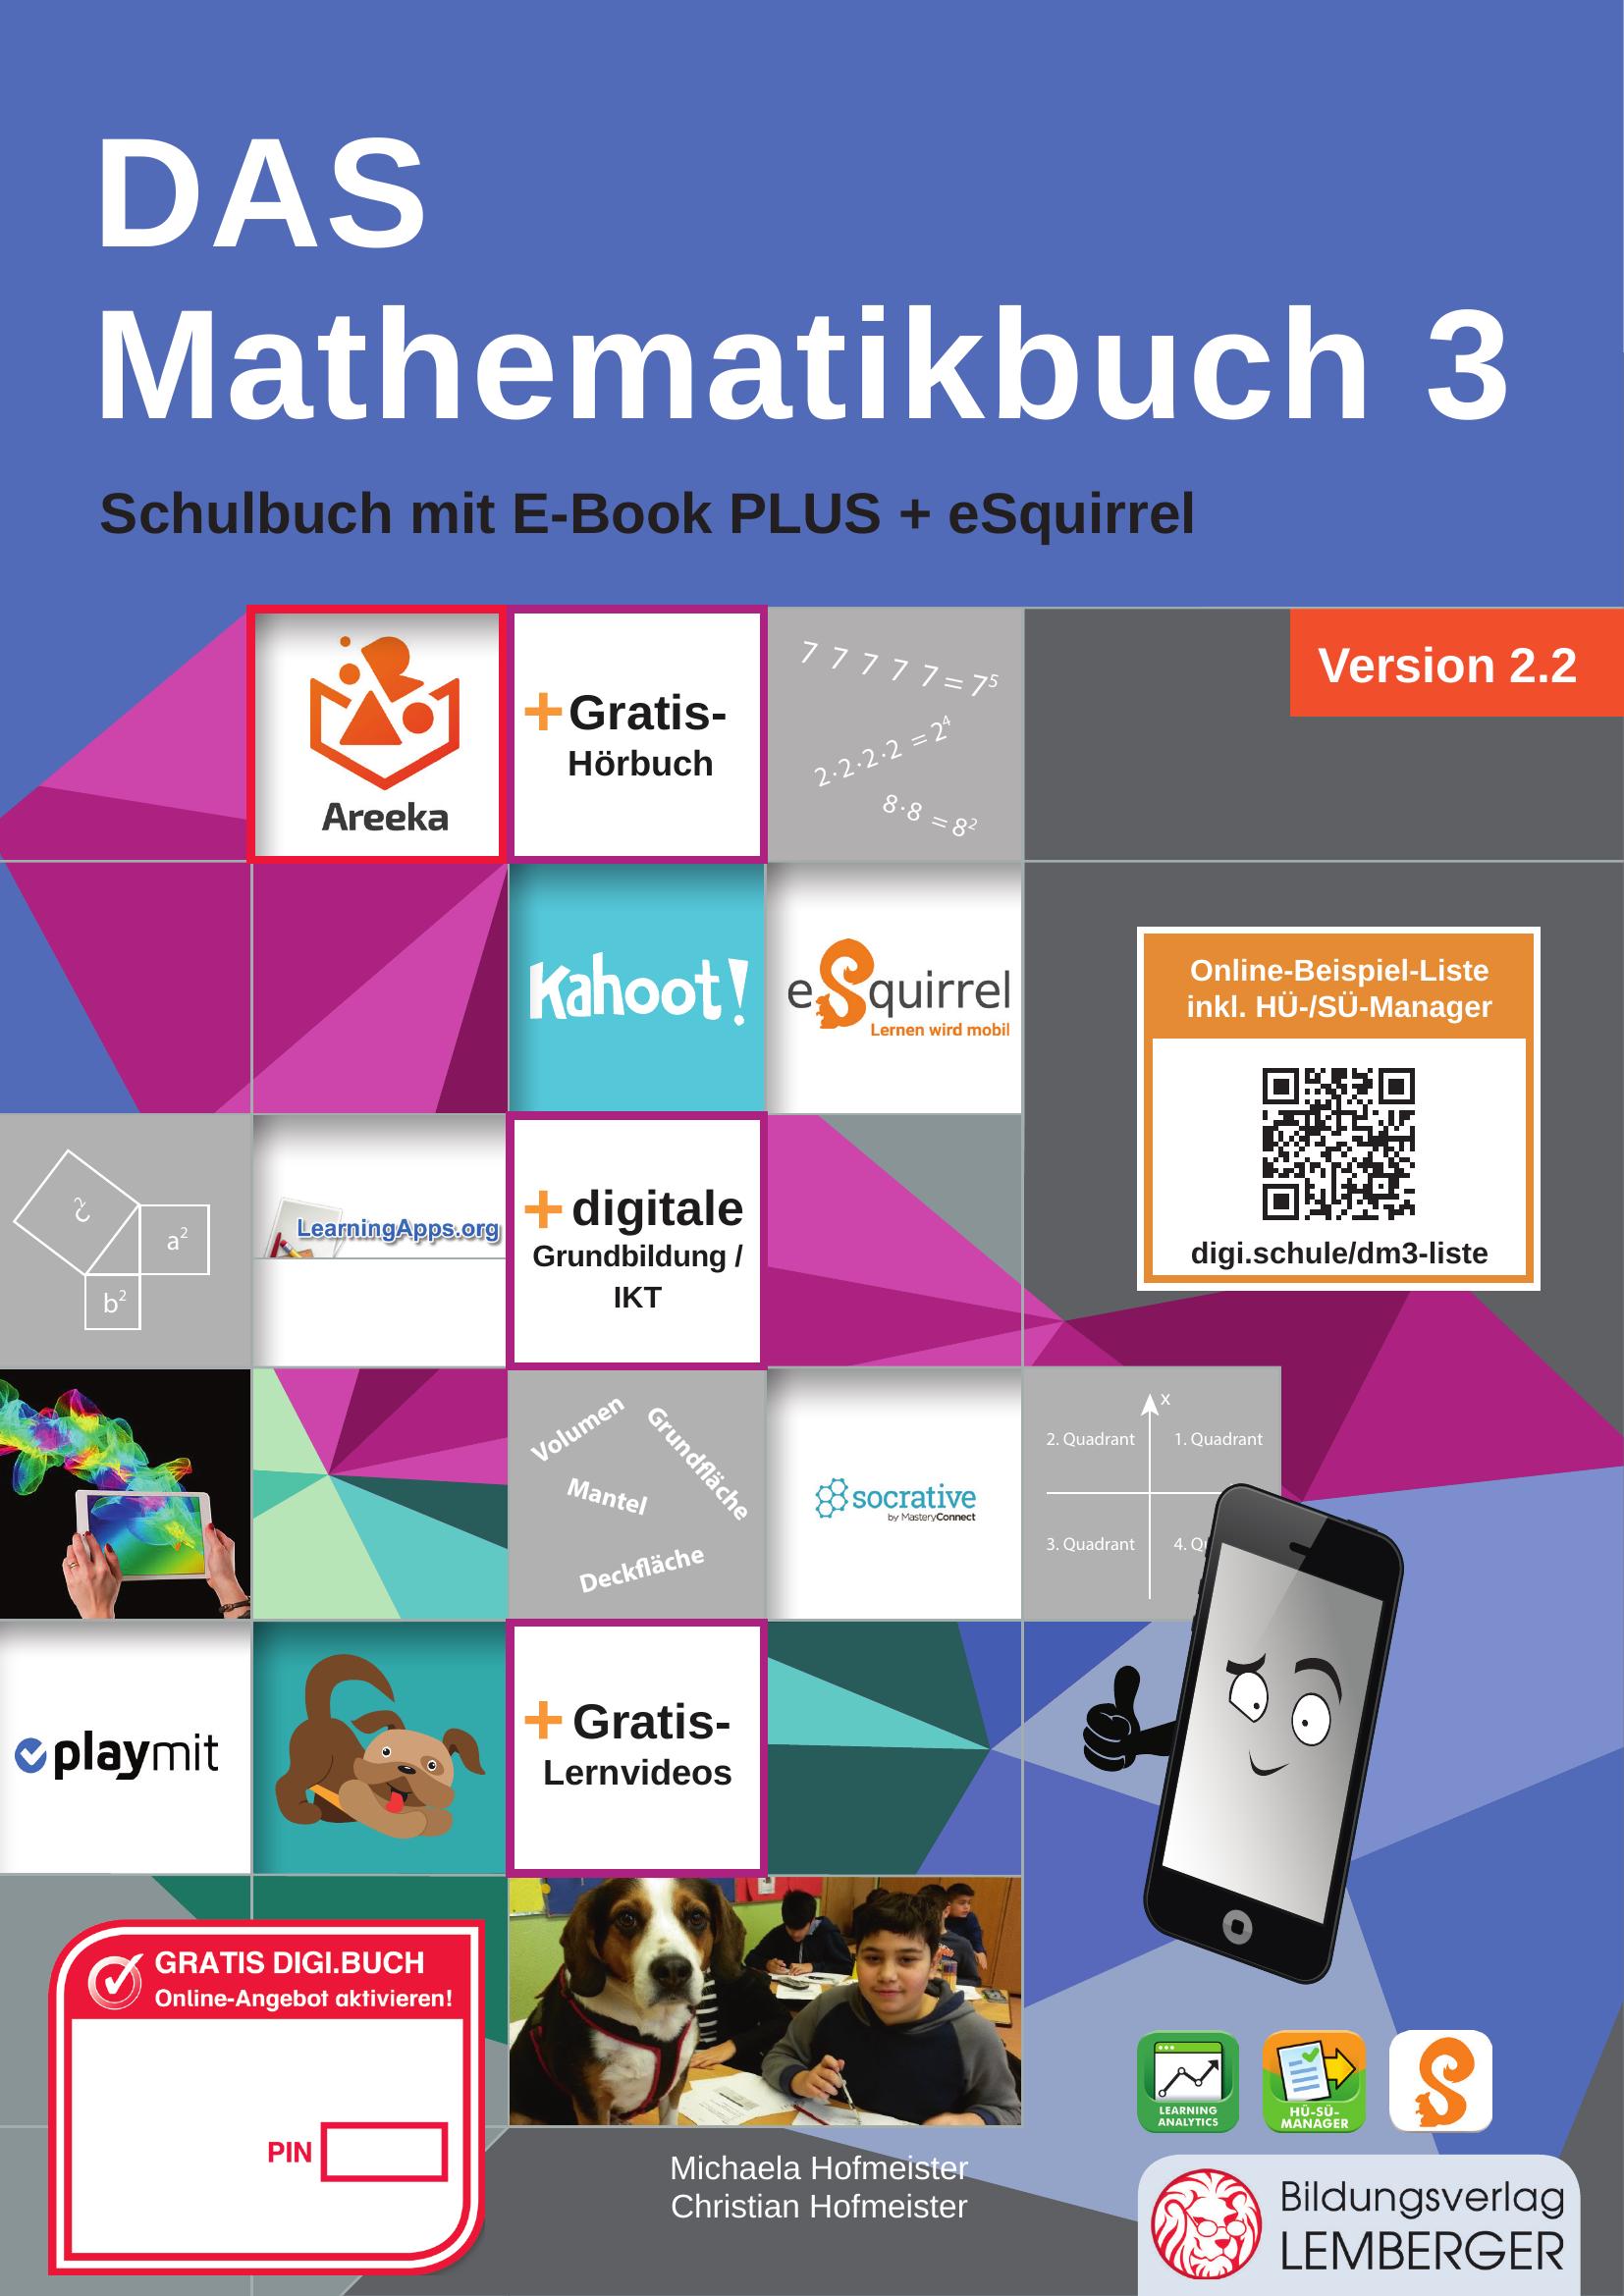 DAS Mathematikbuch 3 IKT v2.2